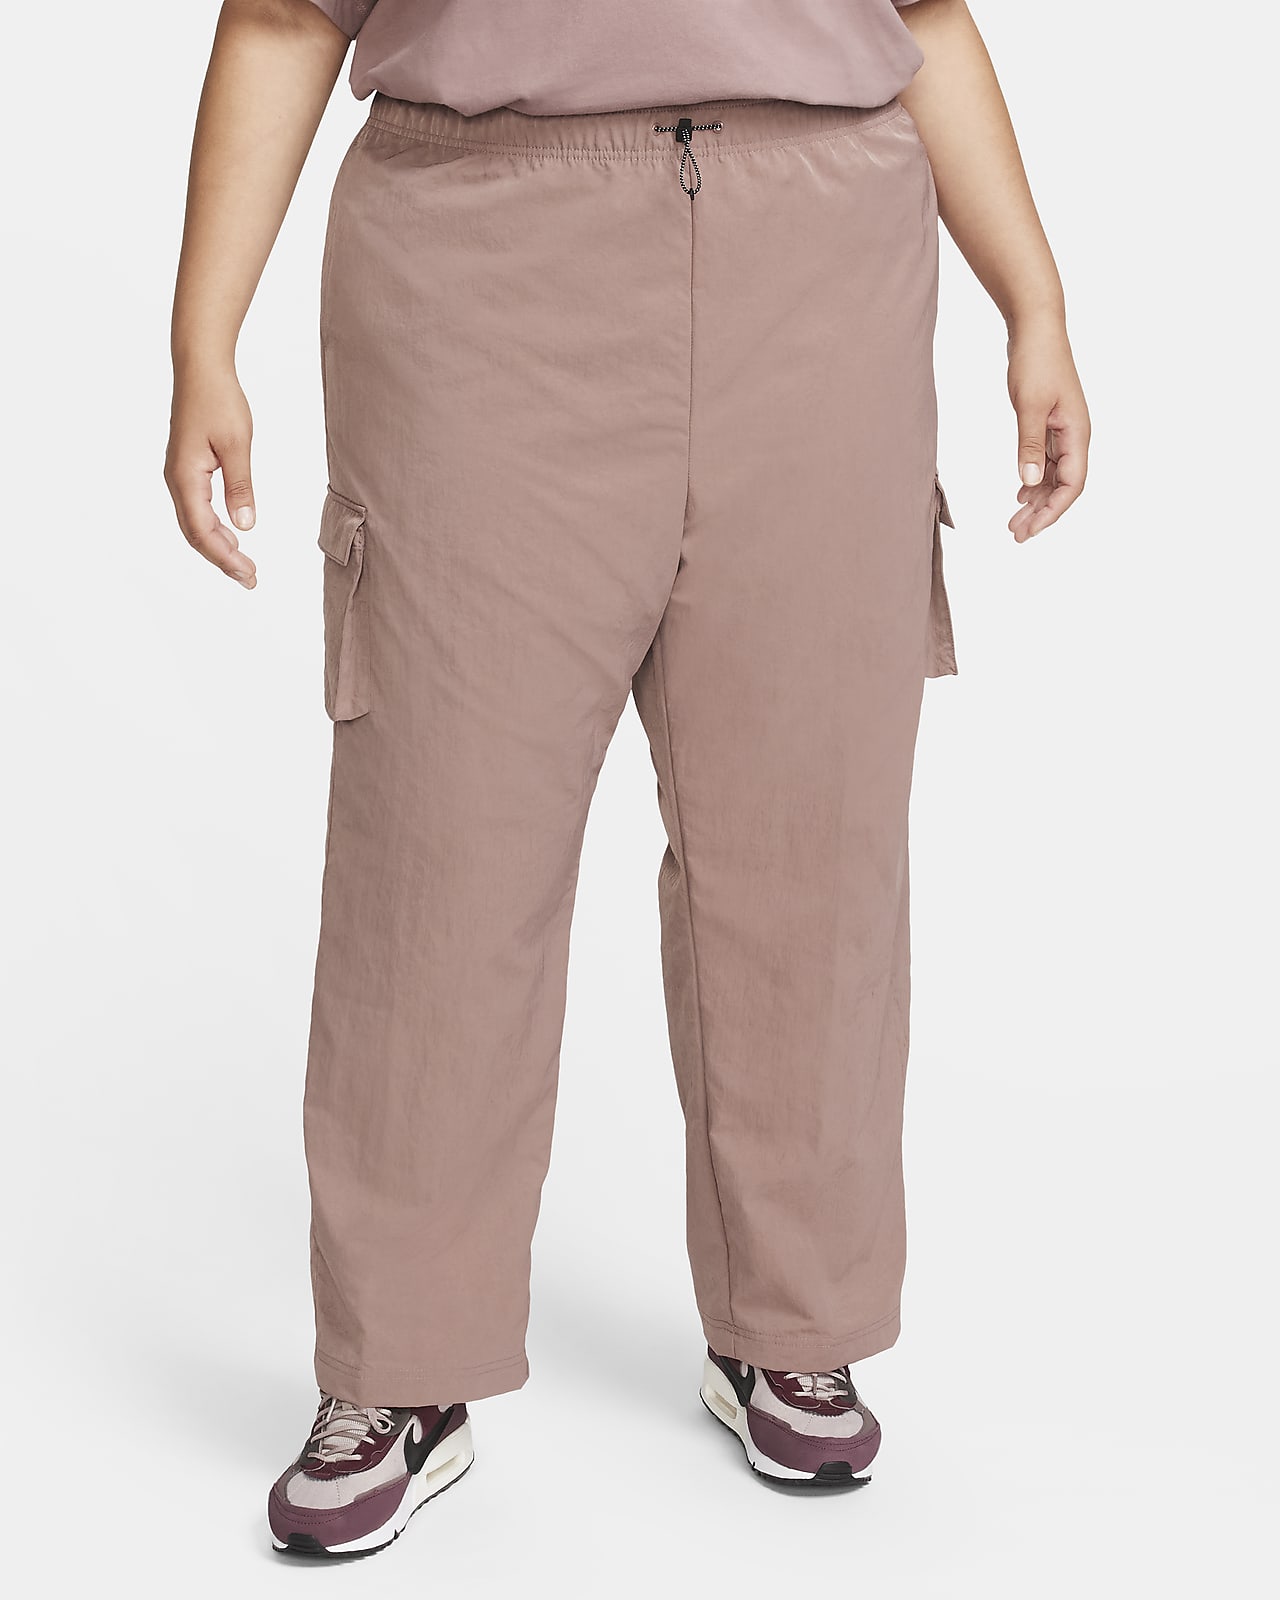 Dámské tkané cargo kalhoty Nike Sportswear Essential s vysokým pasem (větší velikost)